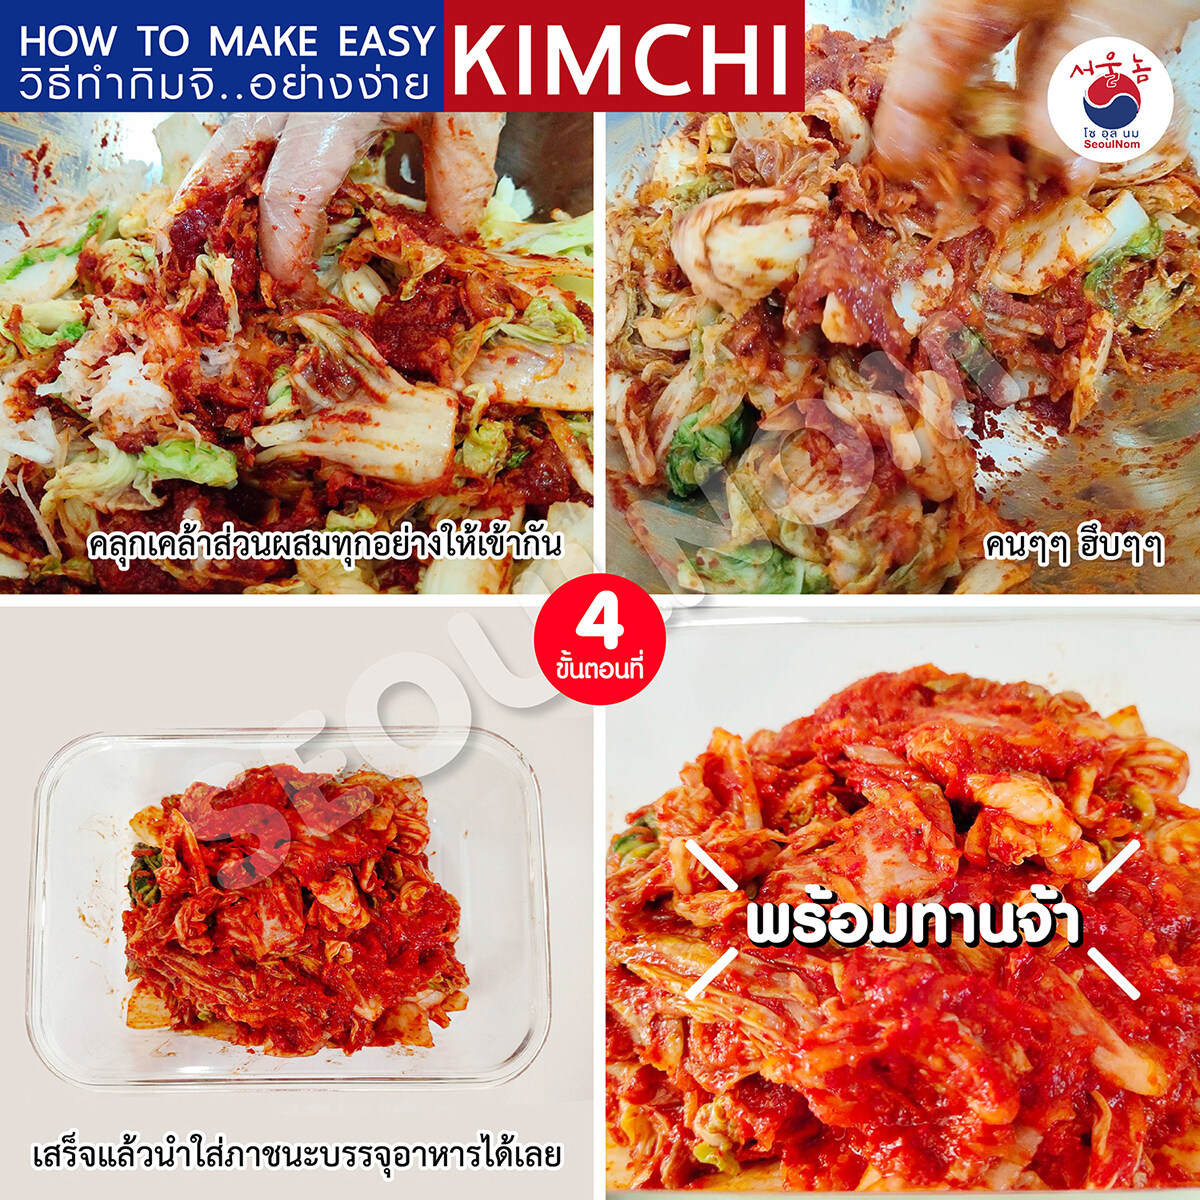 ซอสกิมจิ สำเร็จรูป กิมจิซอส ซอสทำกิมจิ ซอสหมักกิมจิ ทำ กิมจิ สูตรเข้มข้น 450g Kimchi Sauce By SeoulNom (โซอุลนม)🇰🇷 #ซอสเกาหลี ฟรี! คูลเจล